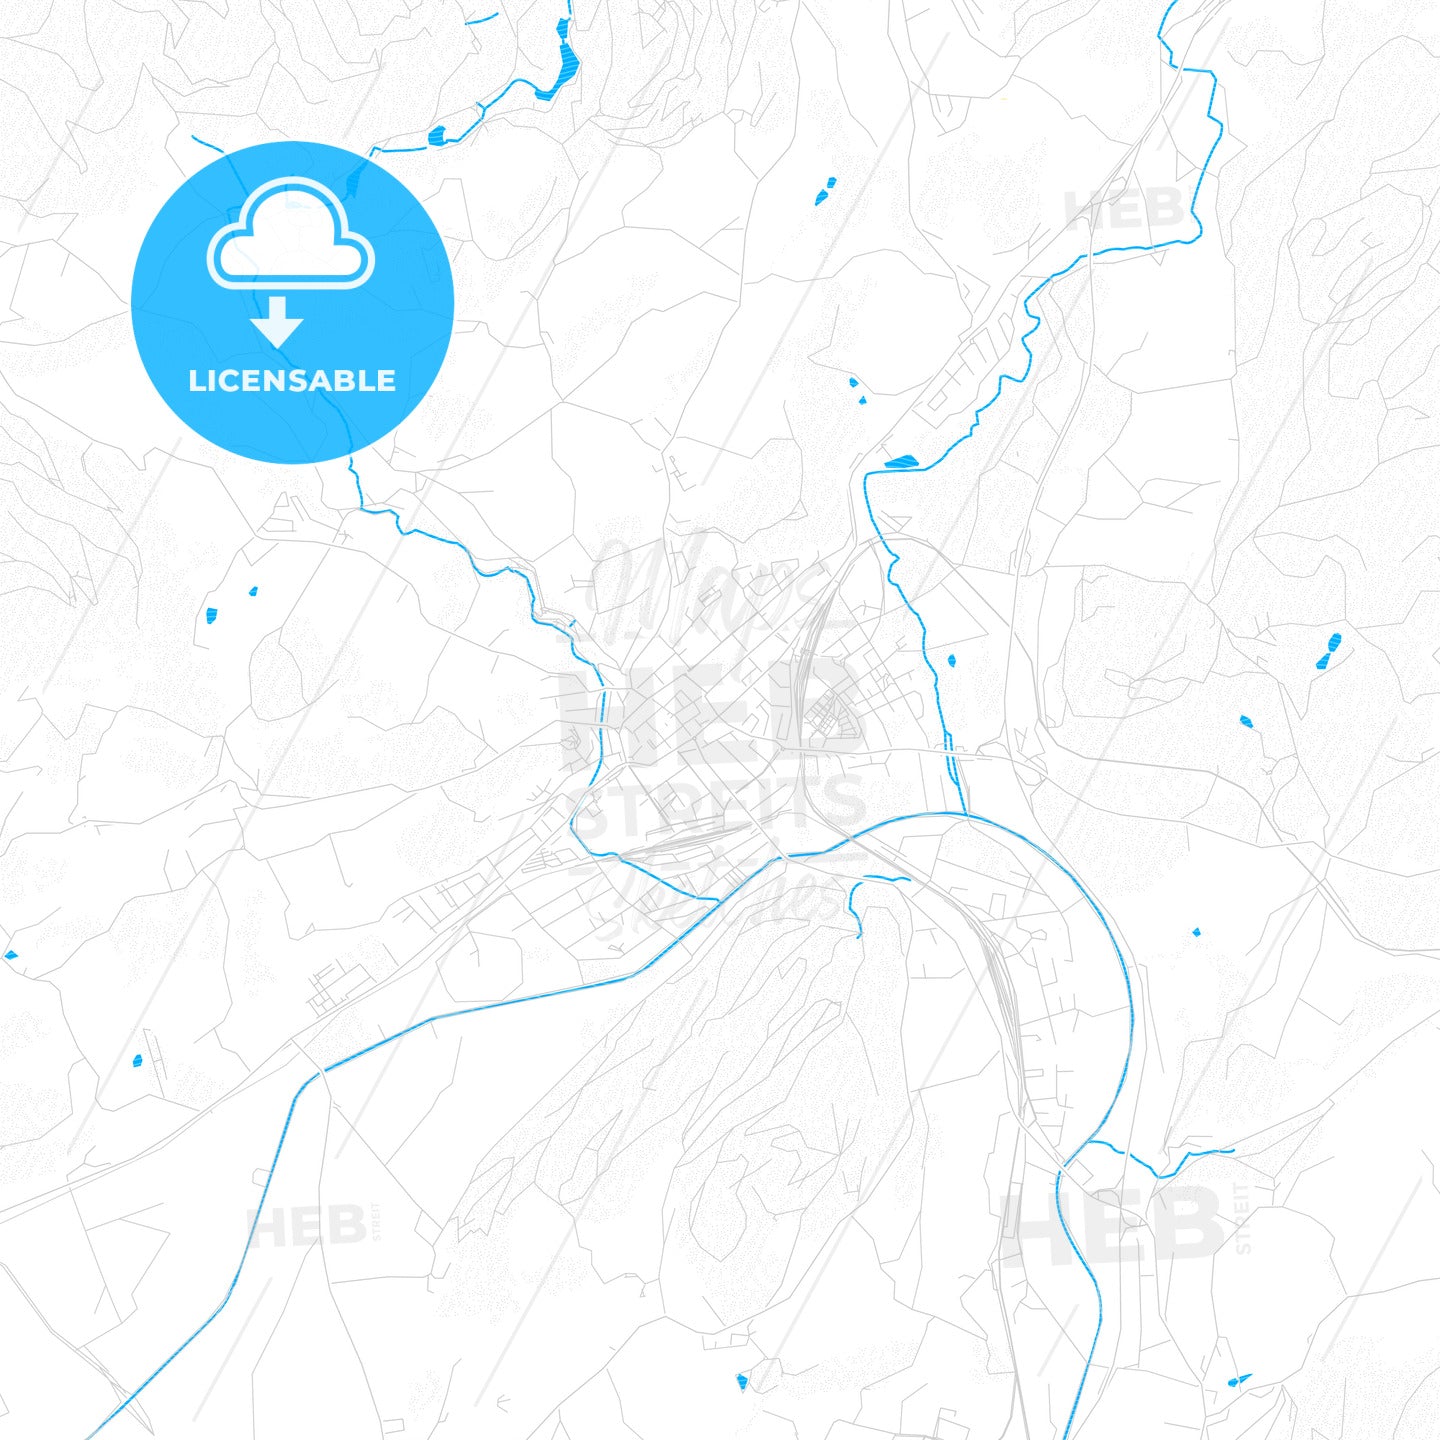 Sankt Veit an der Glan, Austria PDF vector map with water in focus